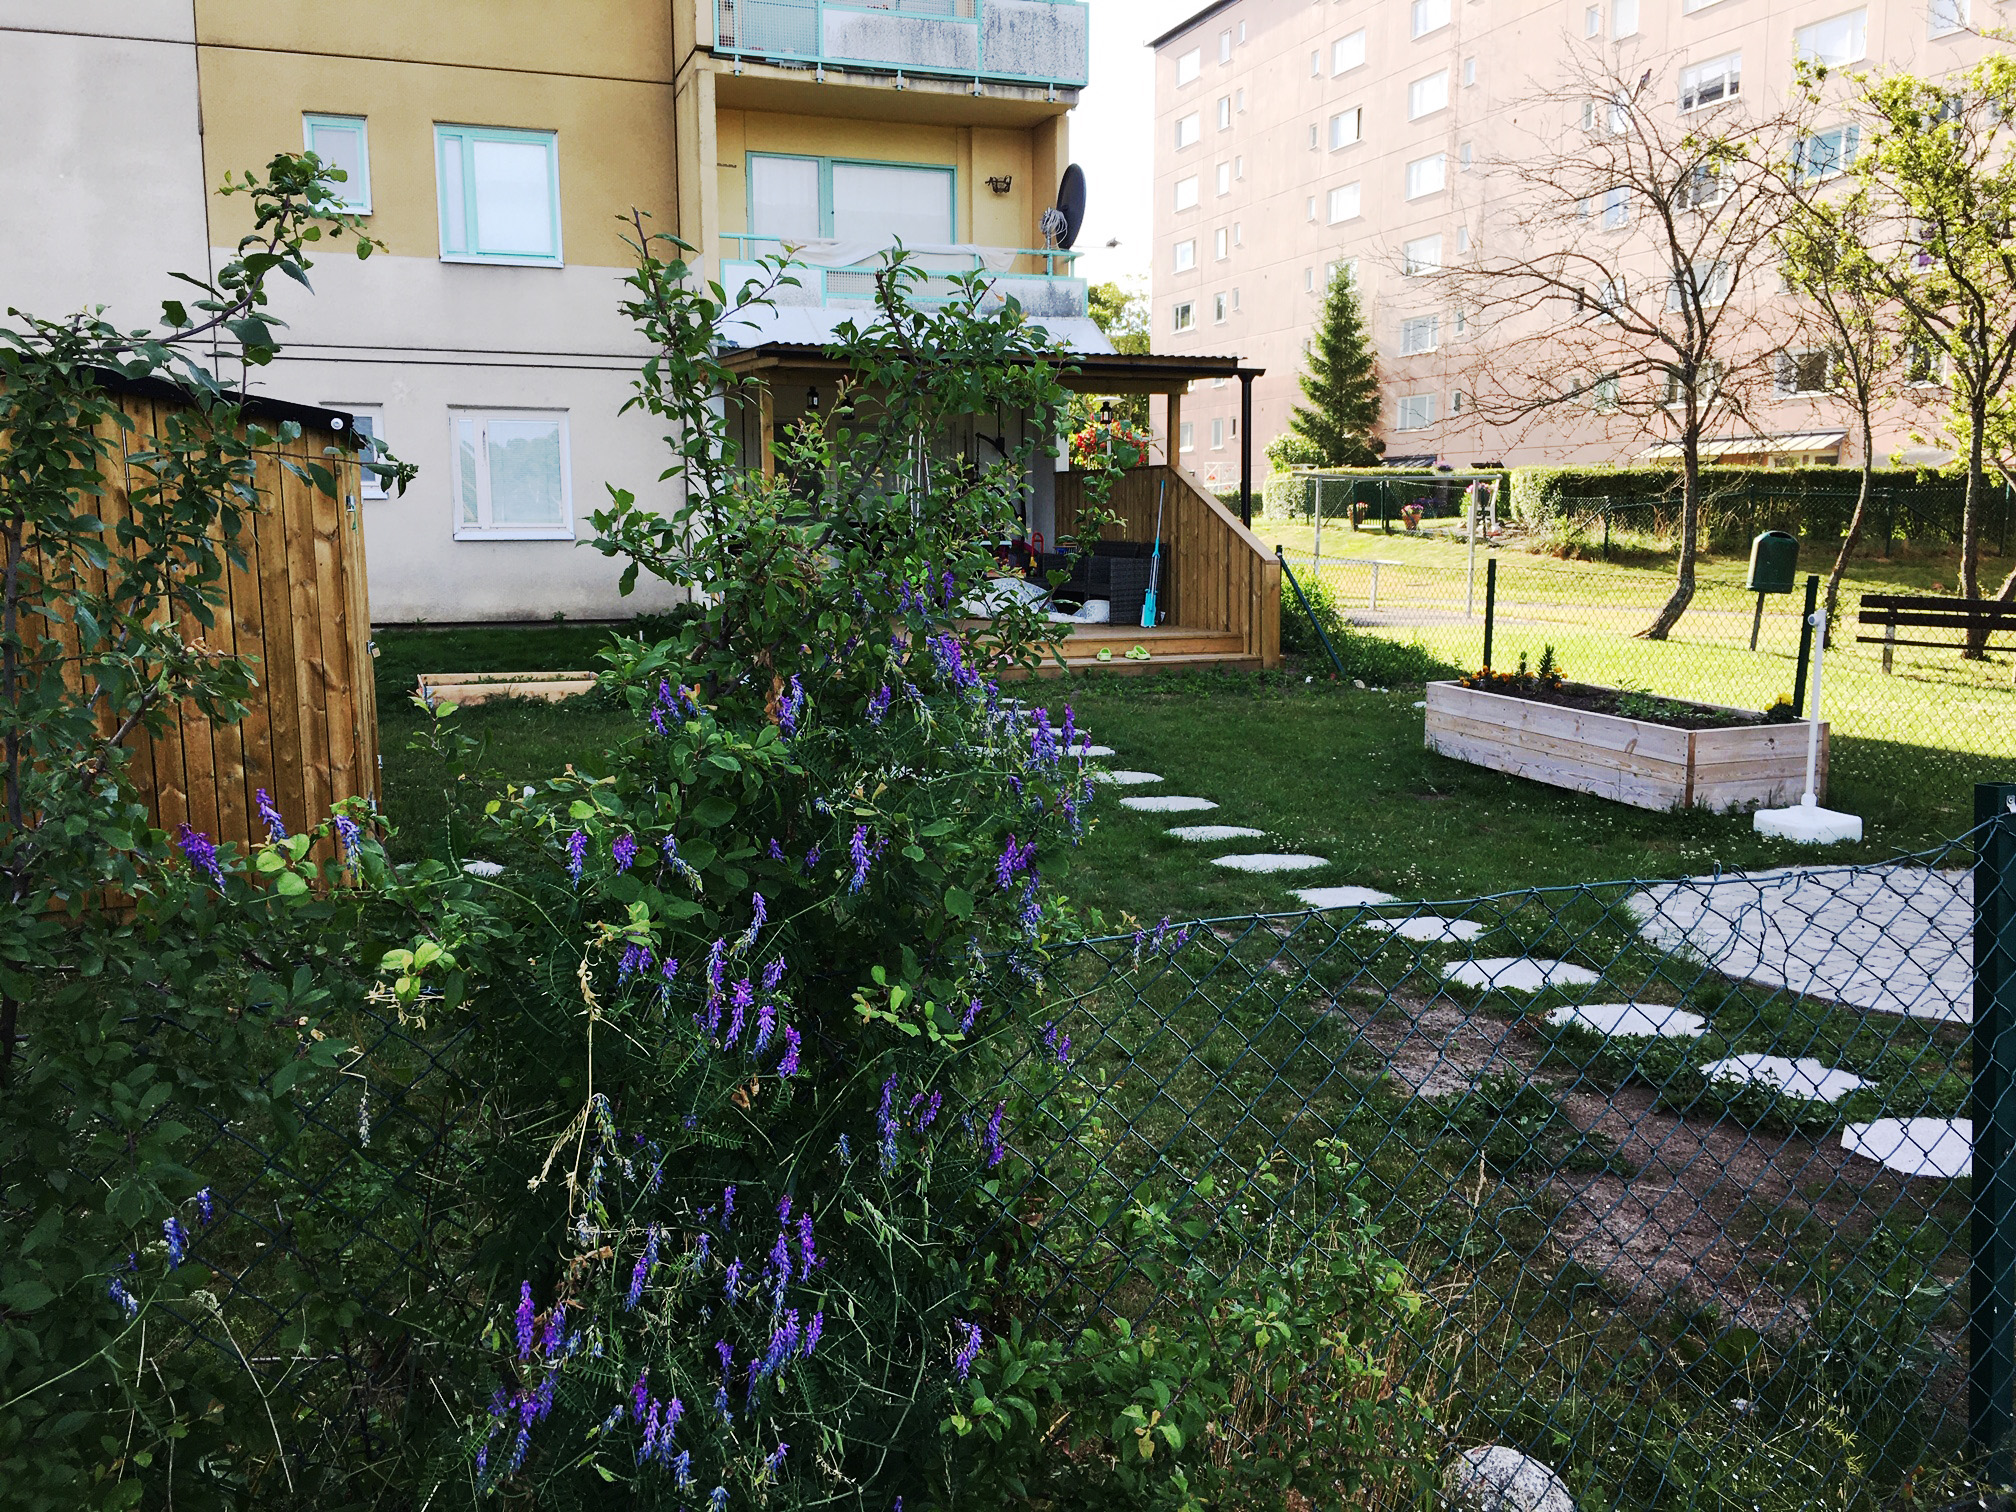 Marklägenhet med trädgård i Botkyrkabyggens boendekoncept TrädgårdsBo